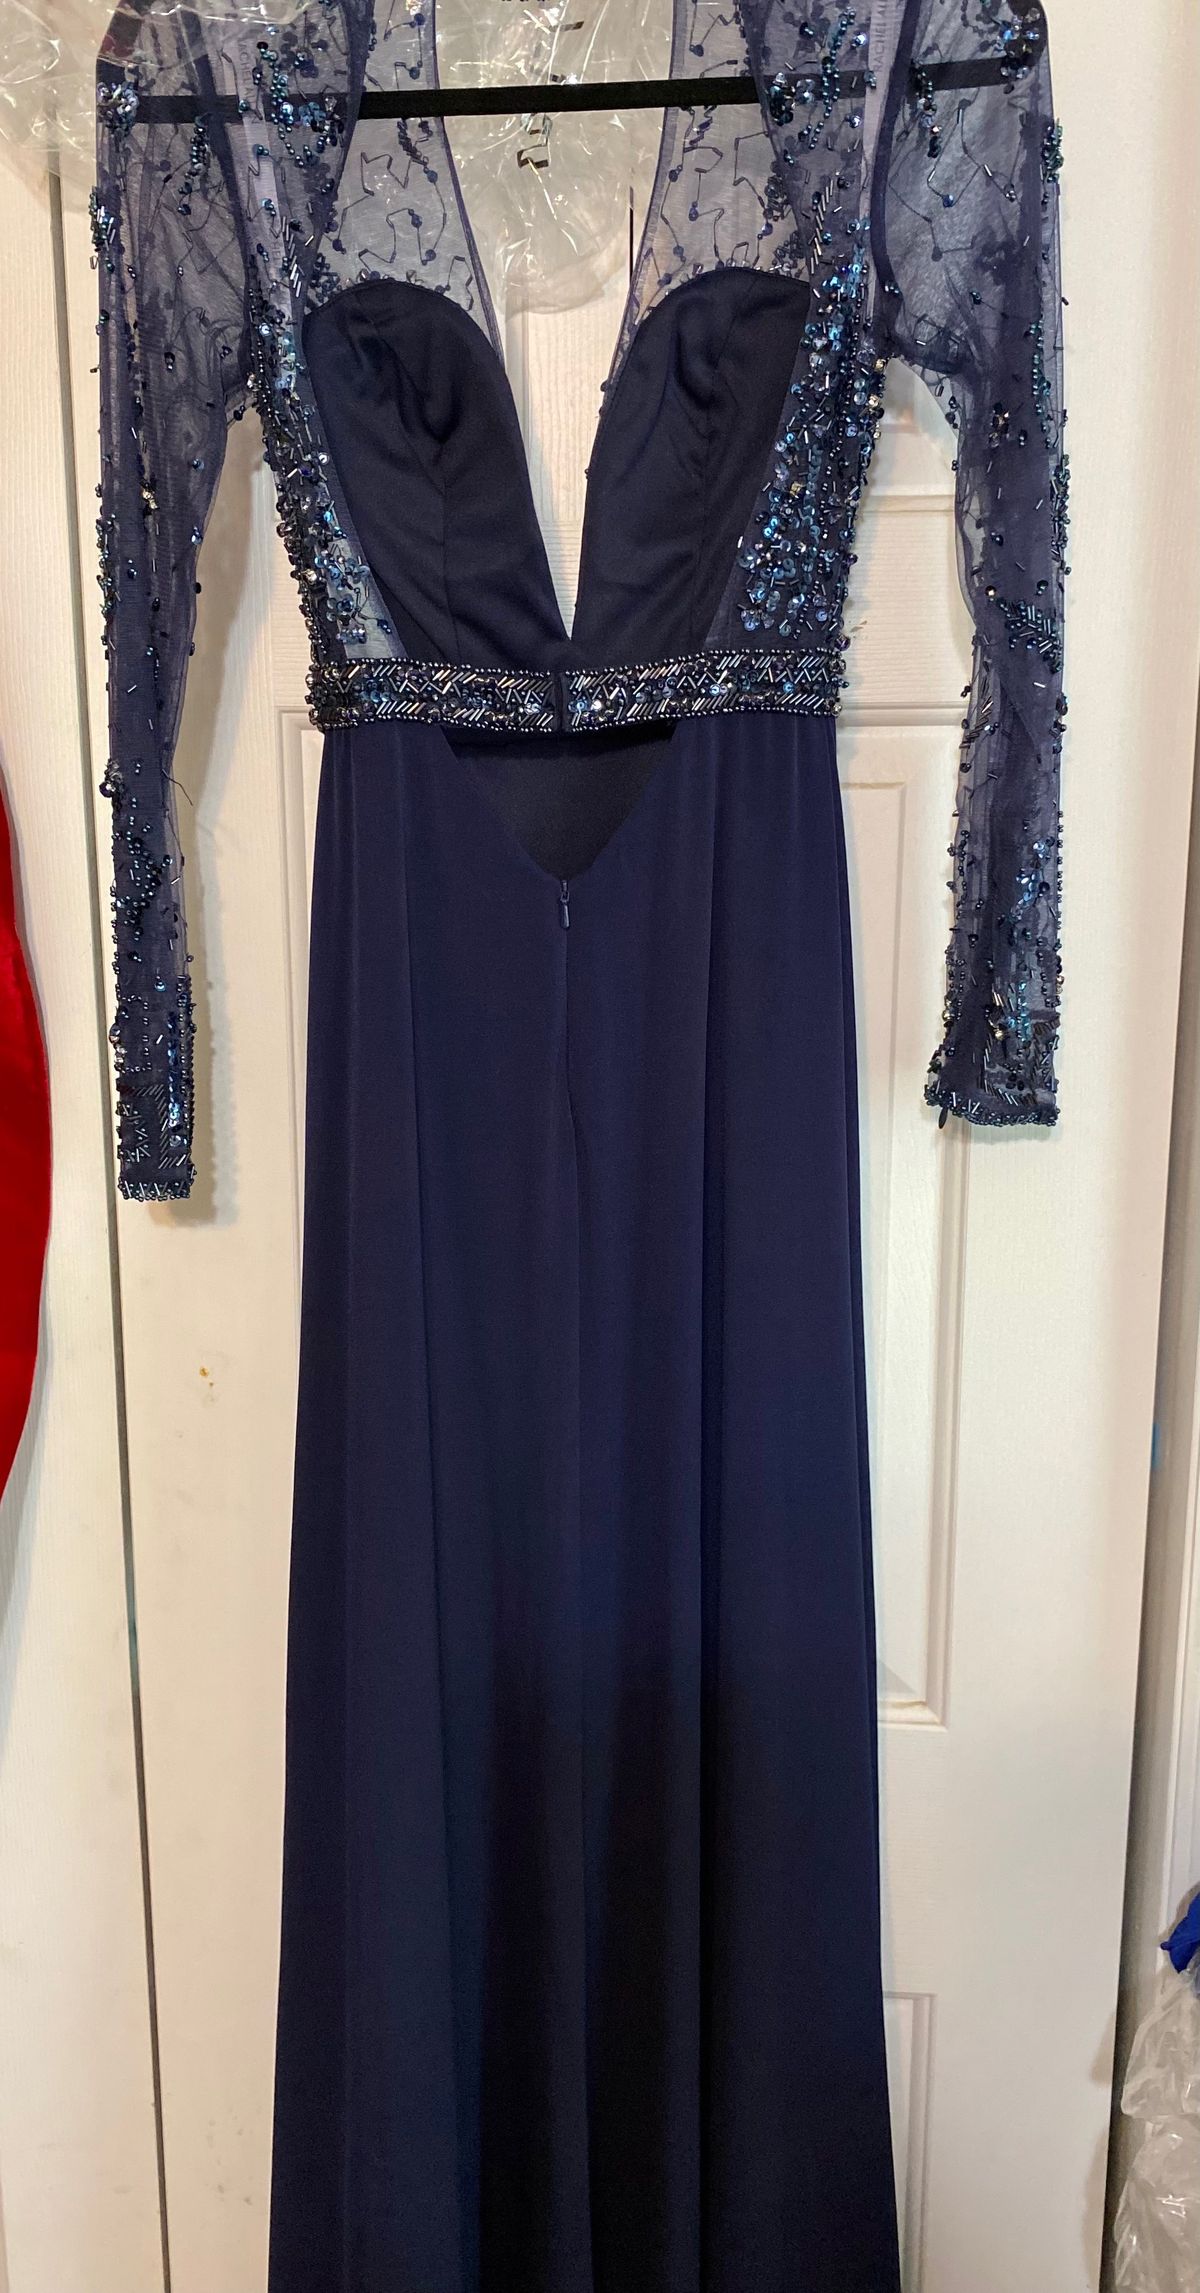 Style 8285 Rachel Allan Size 0 Long Sleeve Navy Blue Side Slit Dress on Queenly